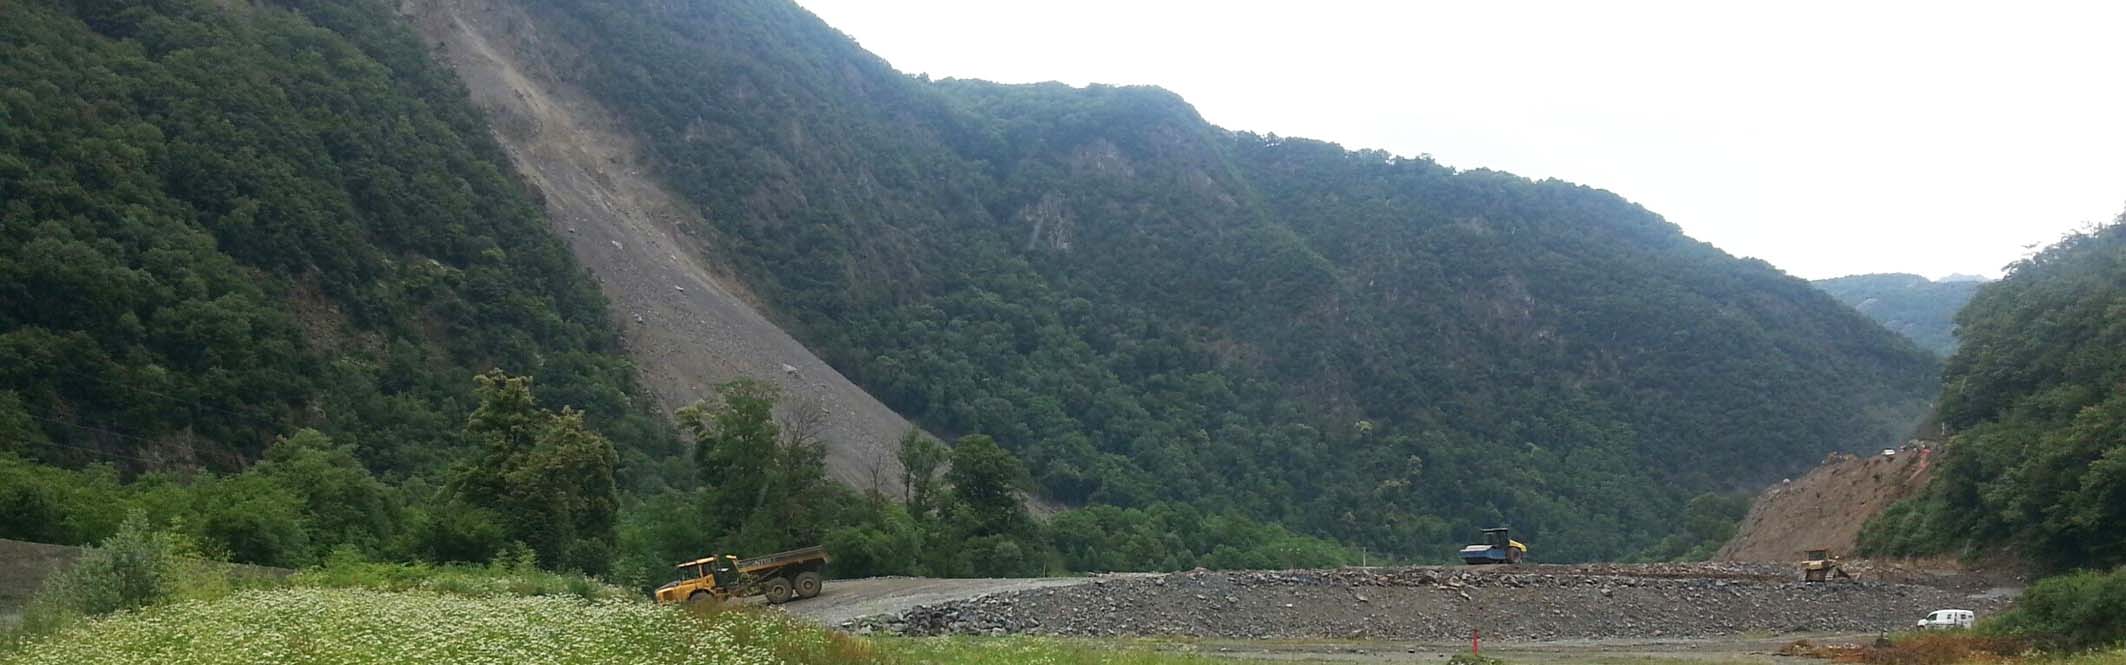 Séchilienne landslide: mitigation work at the toe of the slope